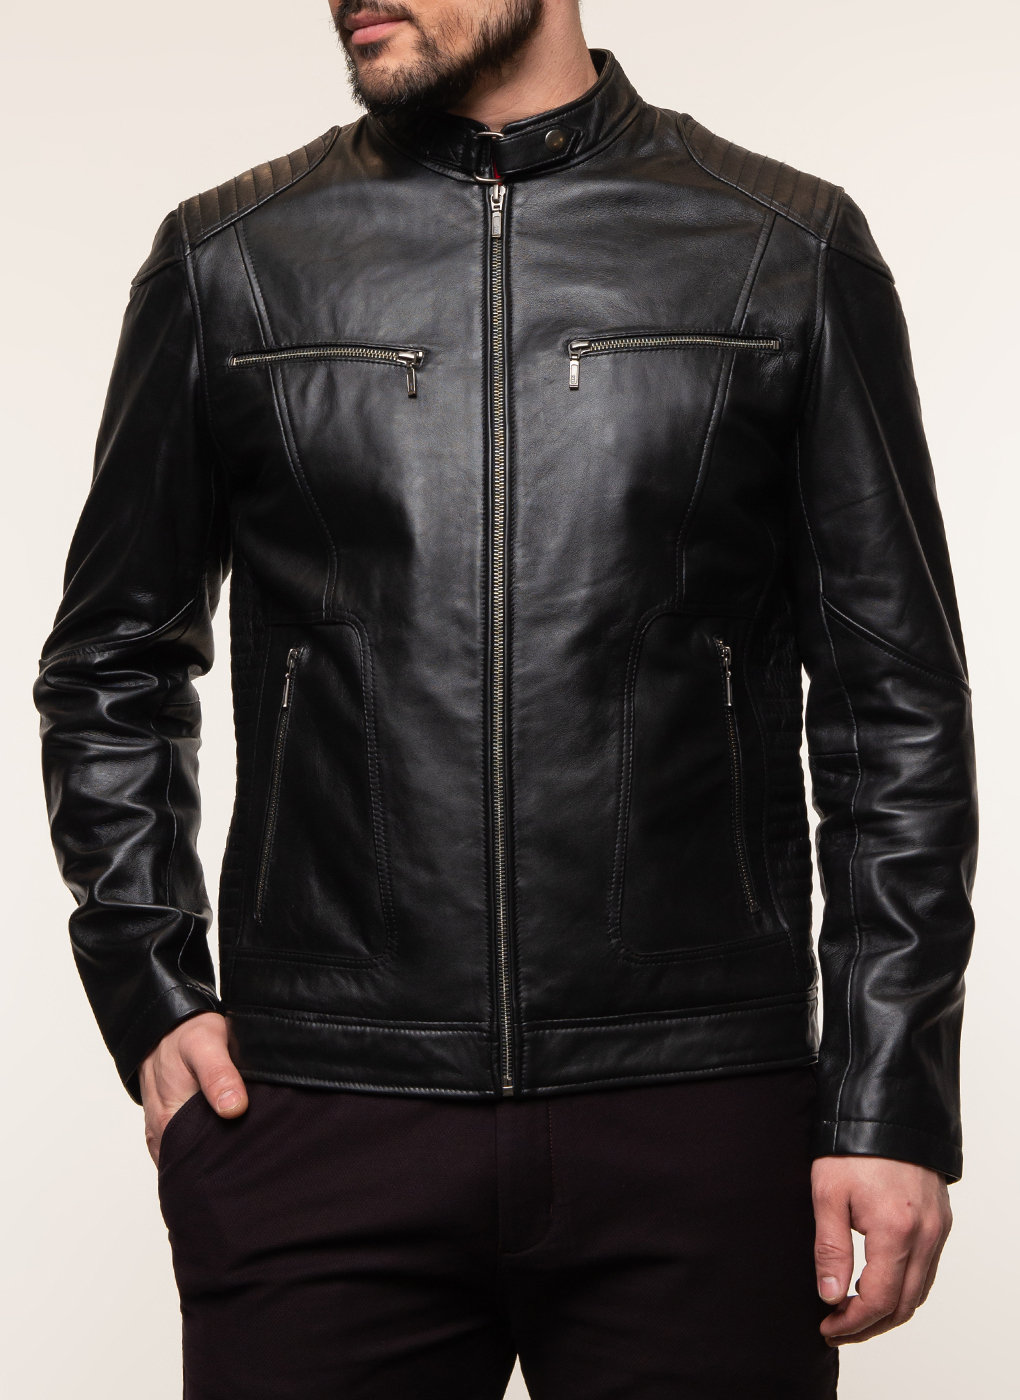 Кожаная куртка мужская Каляев 62648 черная 62 RU